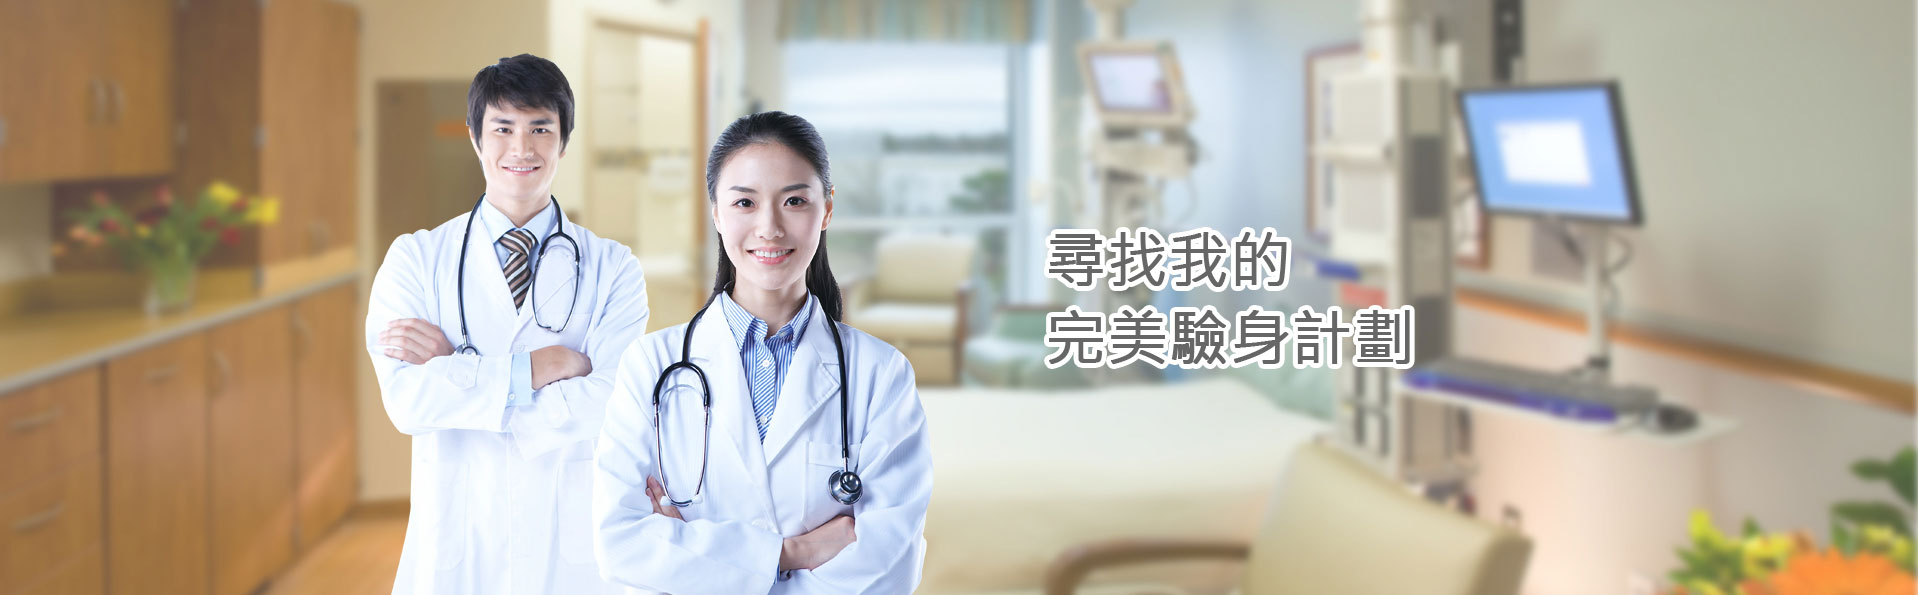 尋找我的驗身計劃-香港一站式醫療服務中心|Medtimes時代醫療